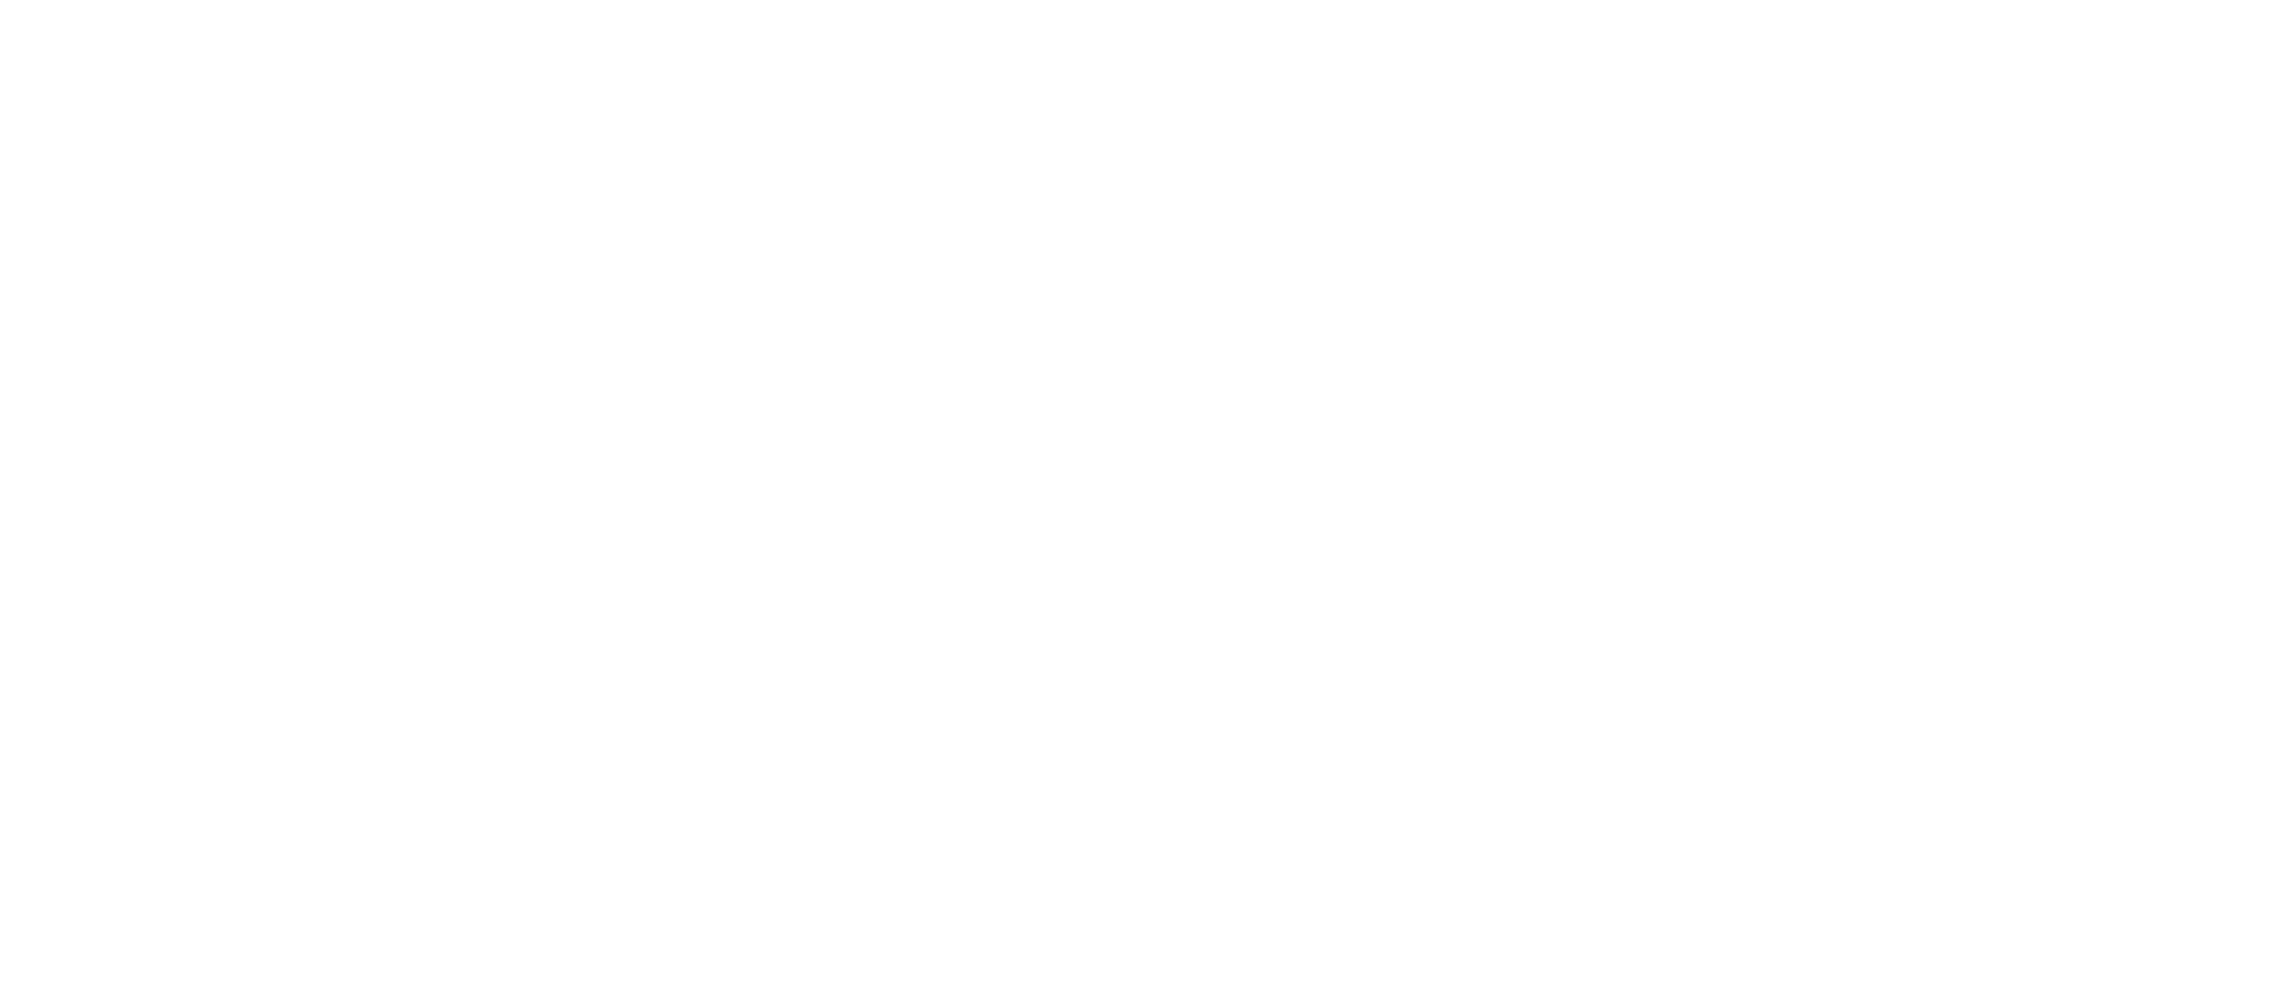 Freedom Self Storage